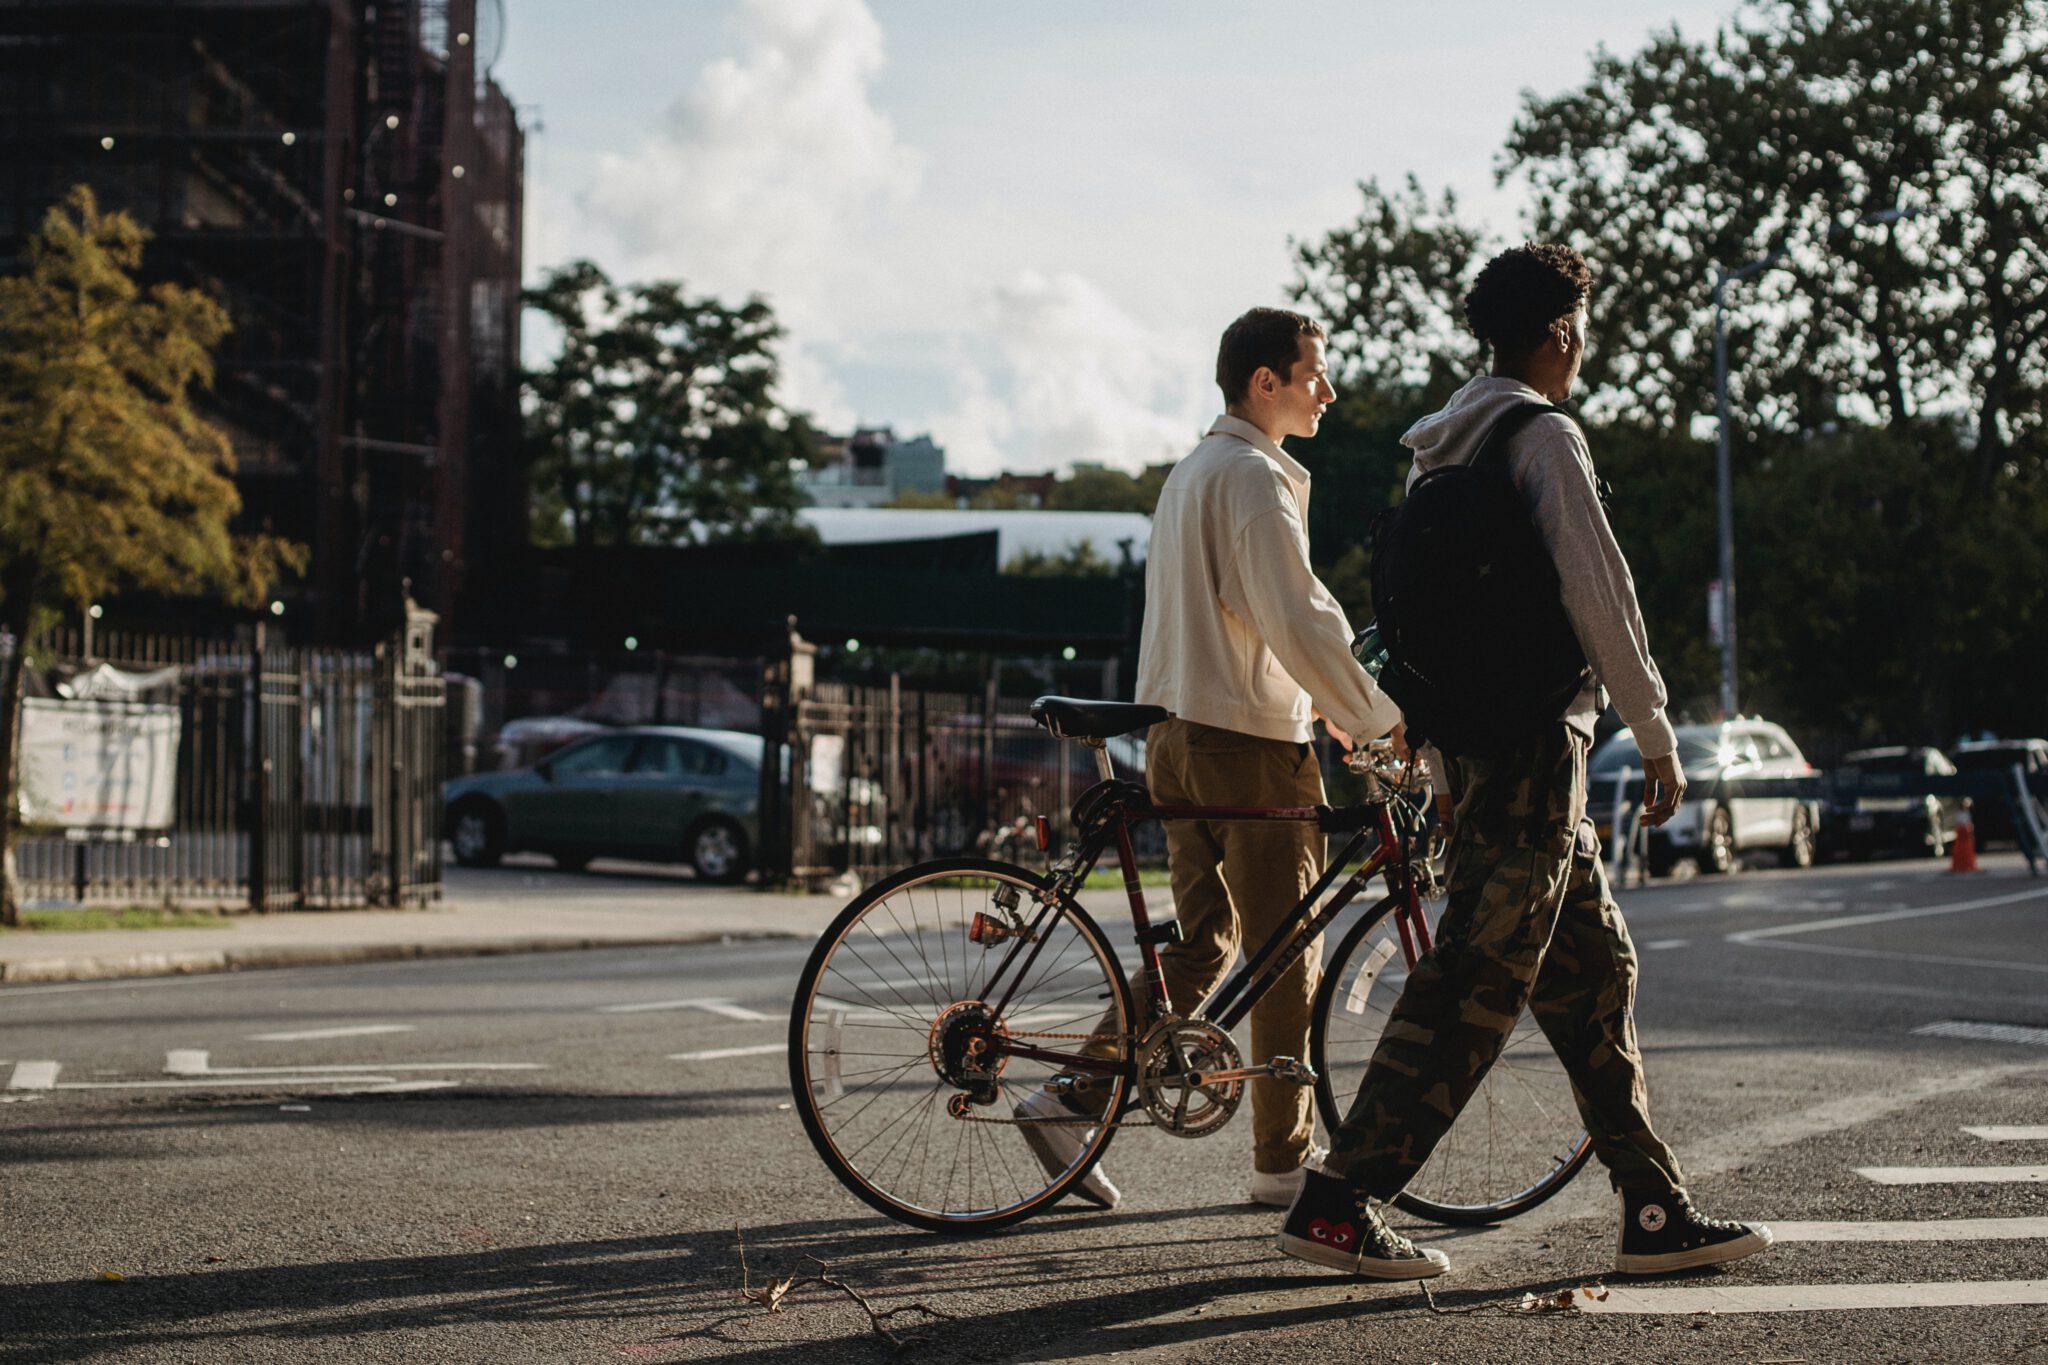 Twee tieners die over straat lopen met een fiets